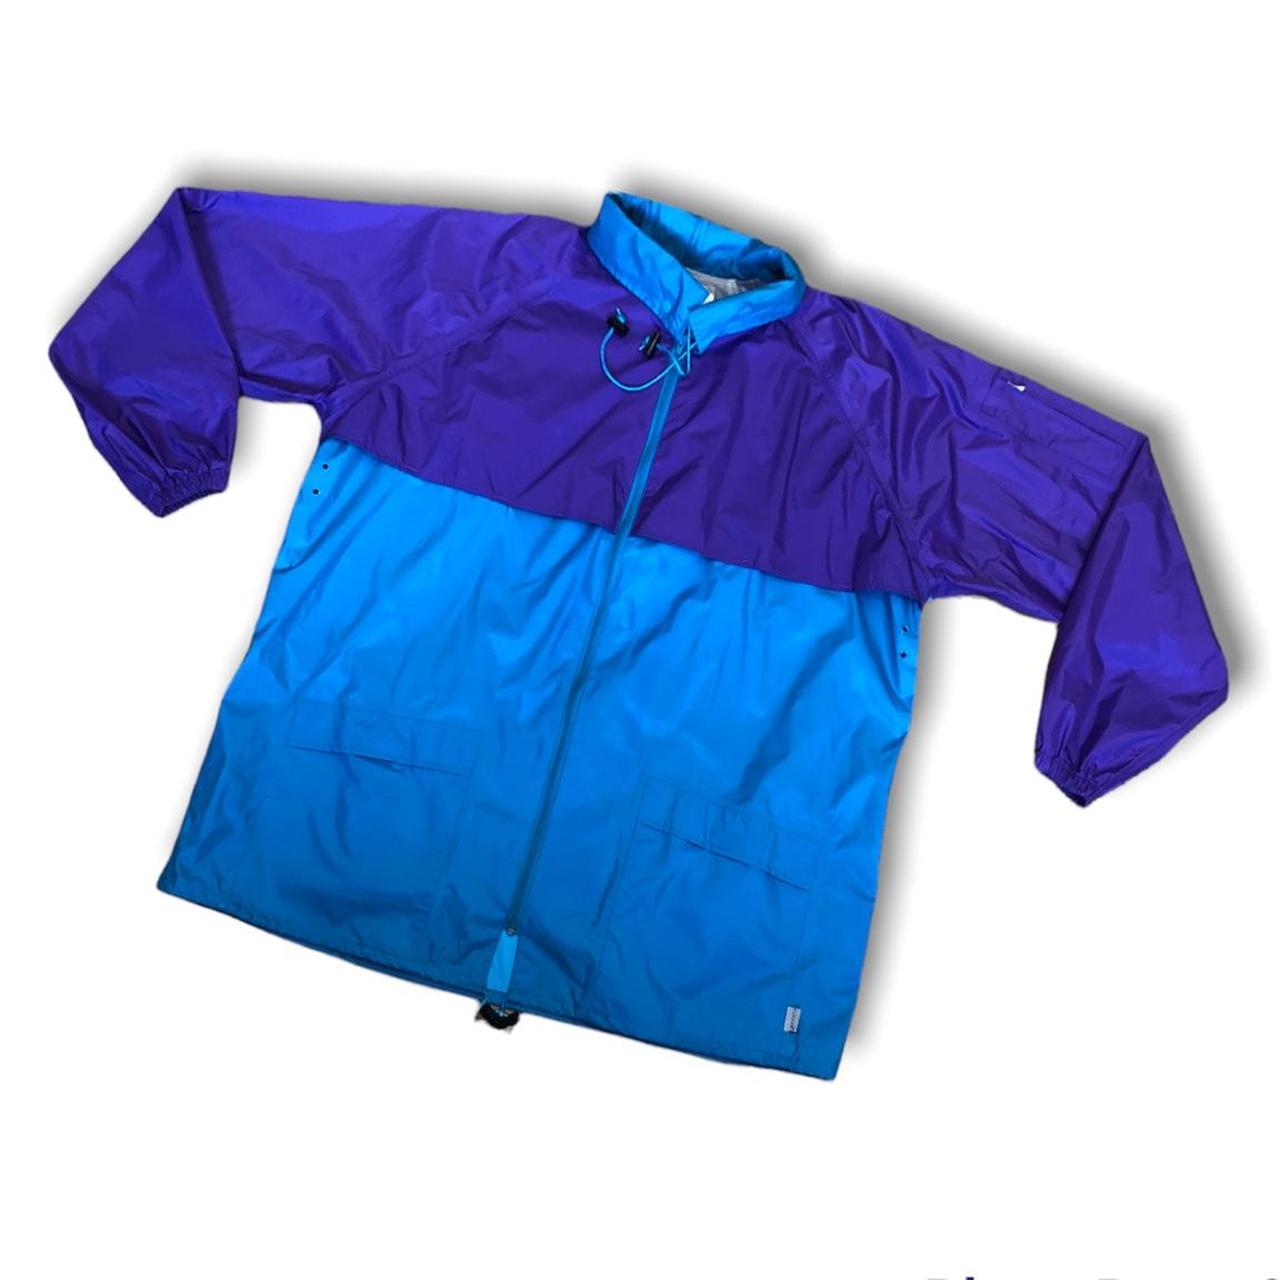 Rains Men's Blue and Purple Jacket